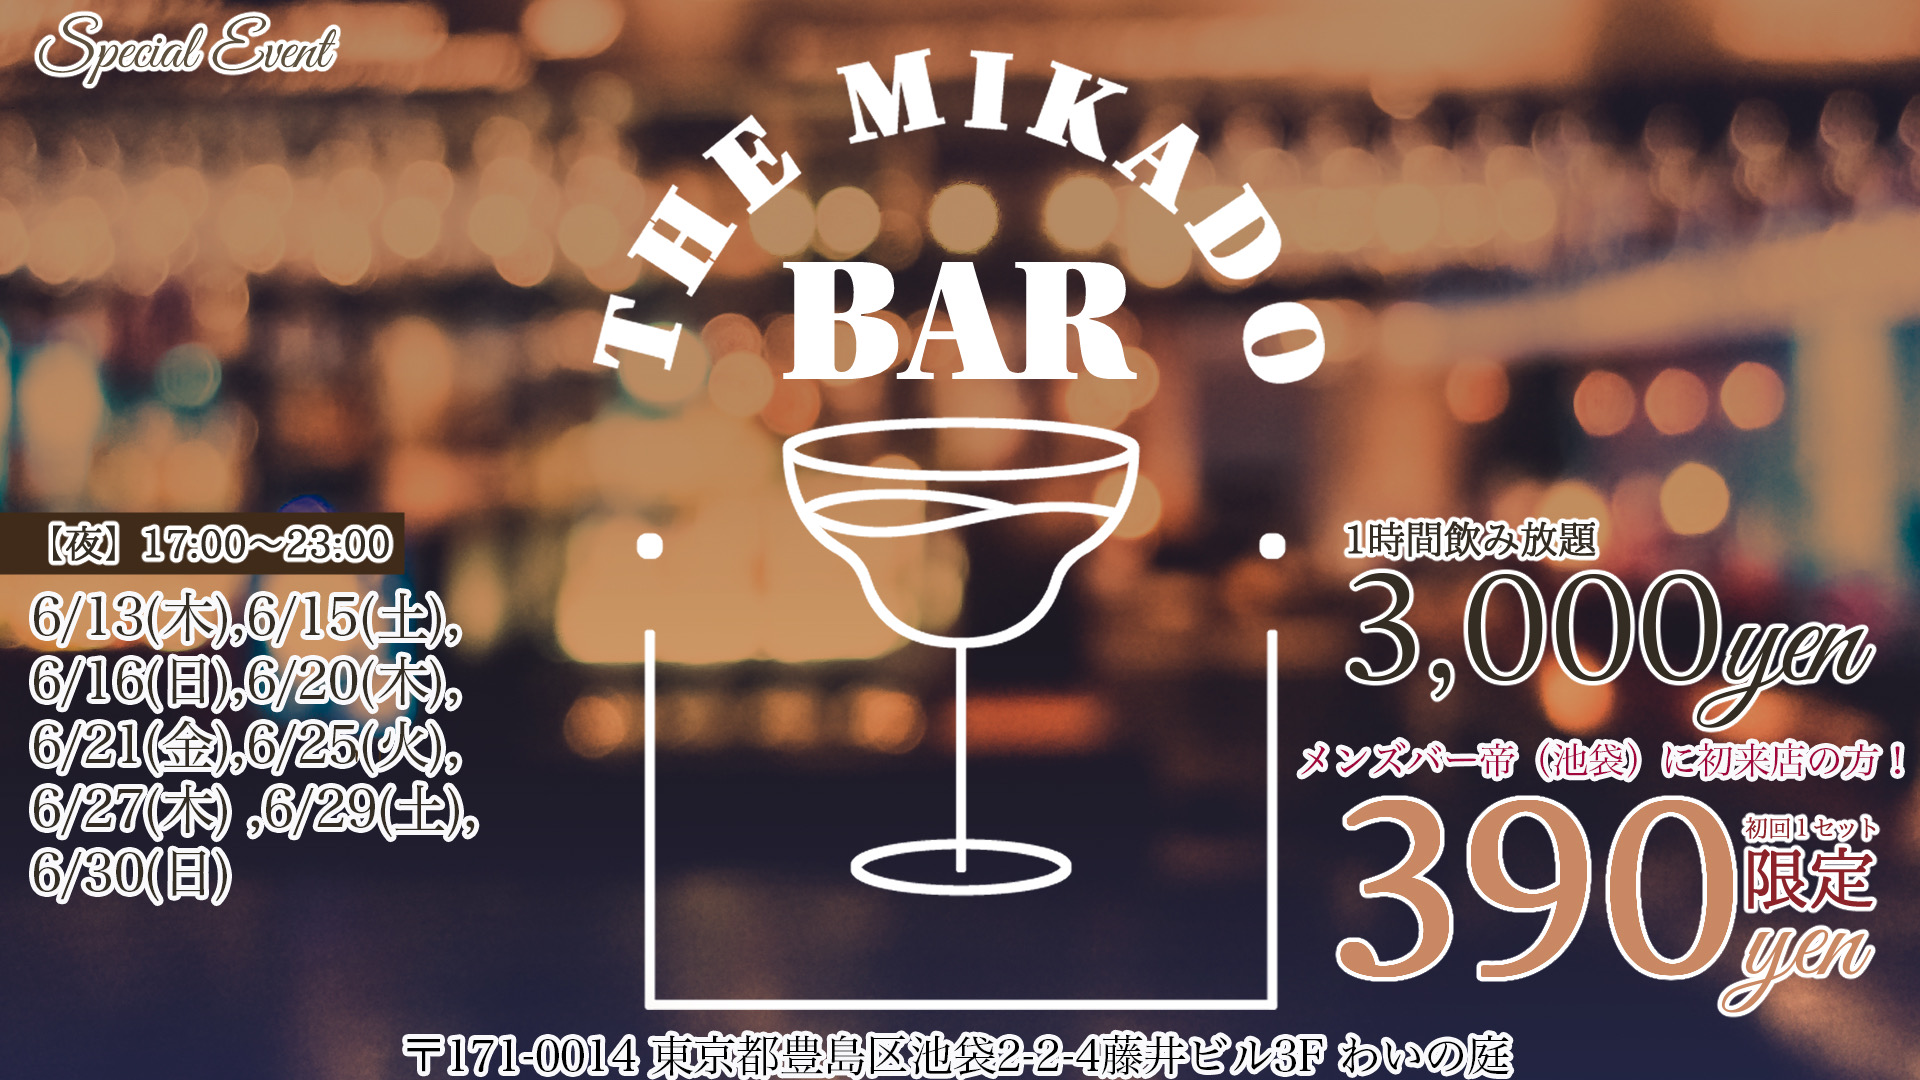 Men's Bar帝2.0